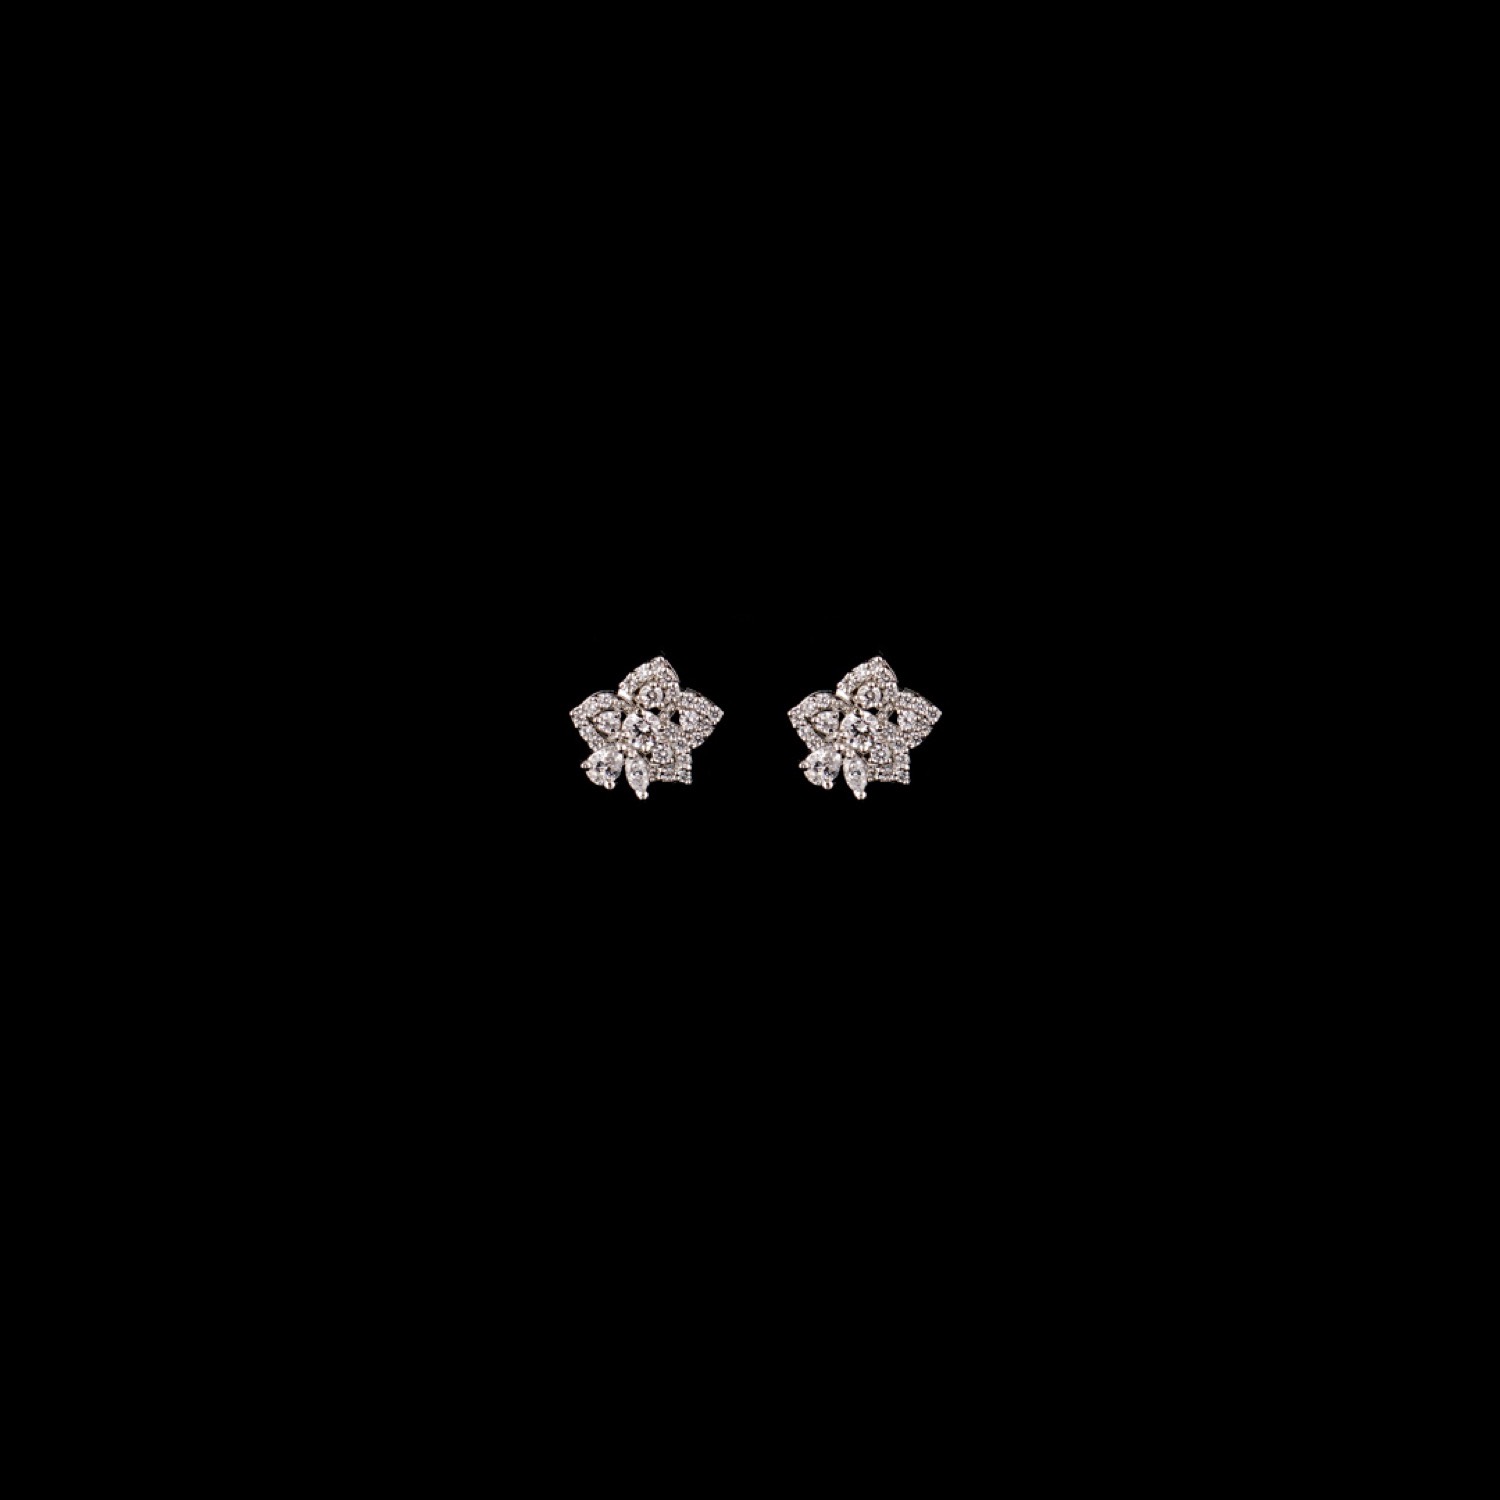 varam_earrings_102022_designer_flower_shaped_white_stone_silver_earrings-1